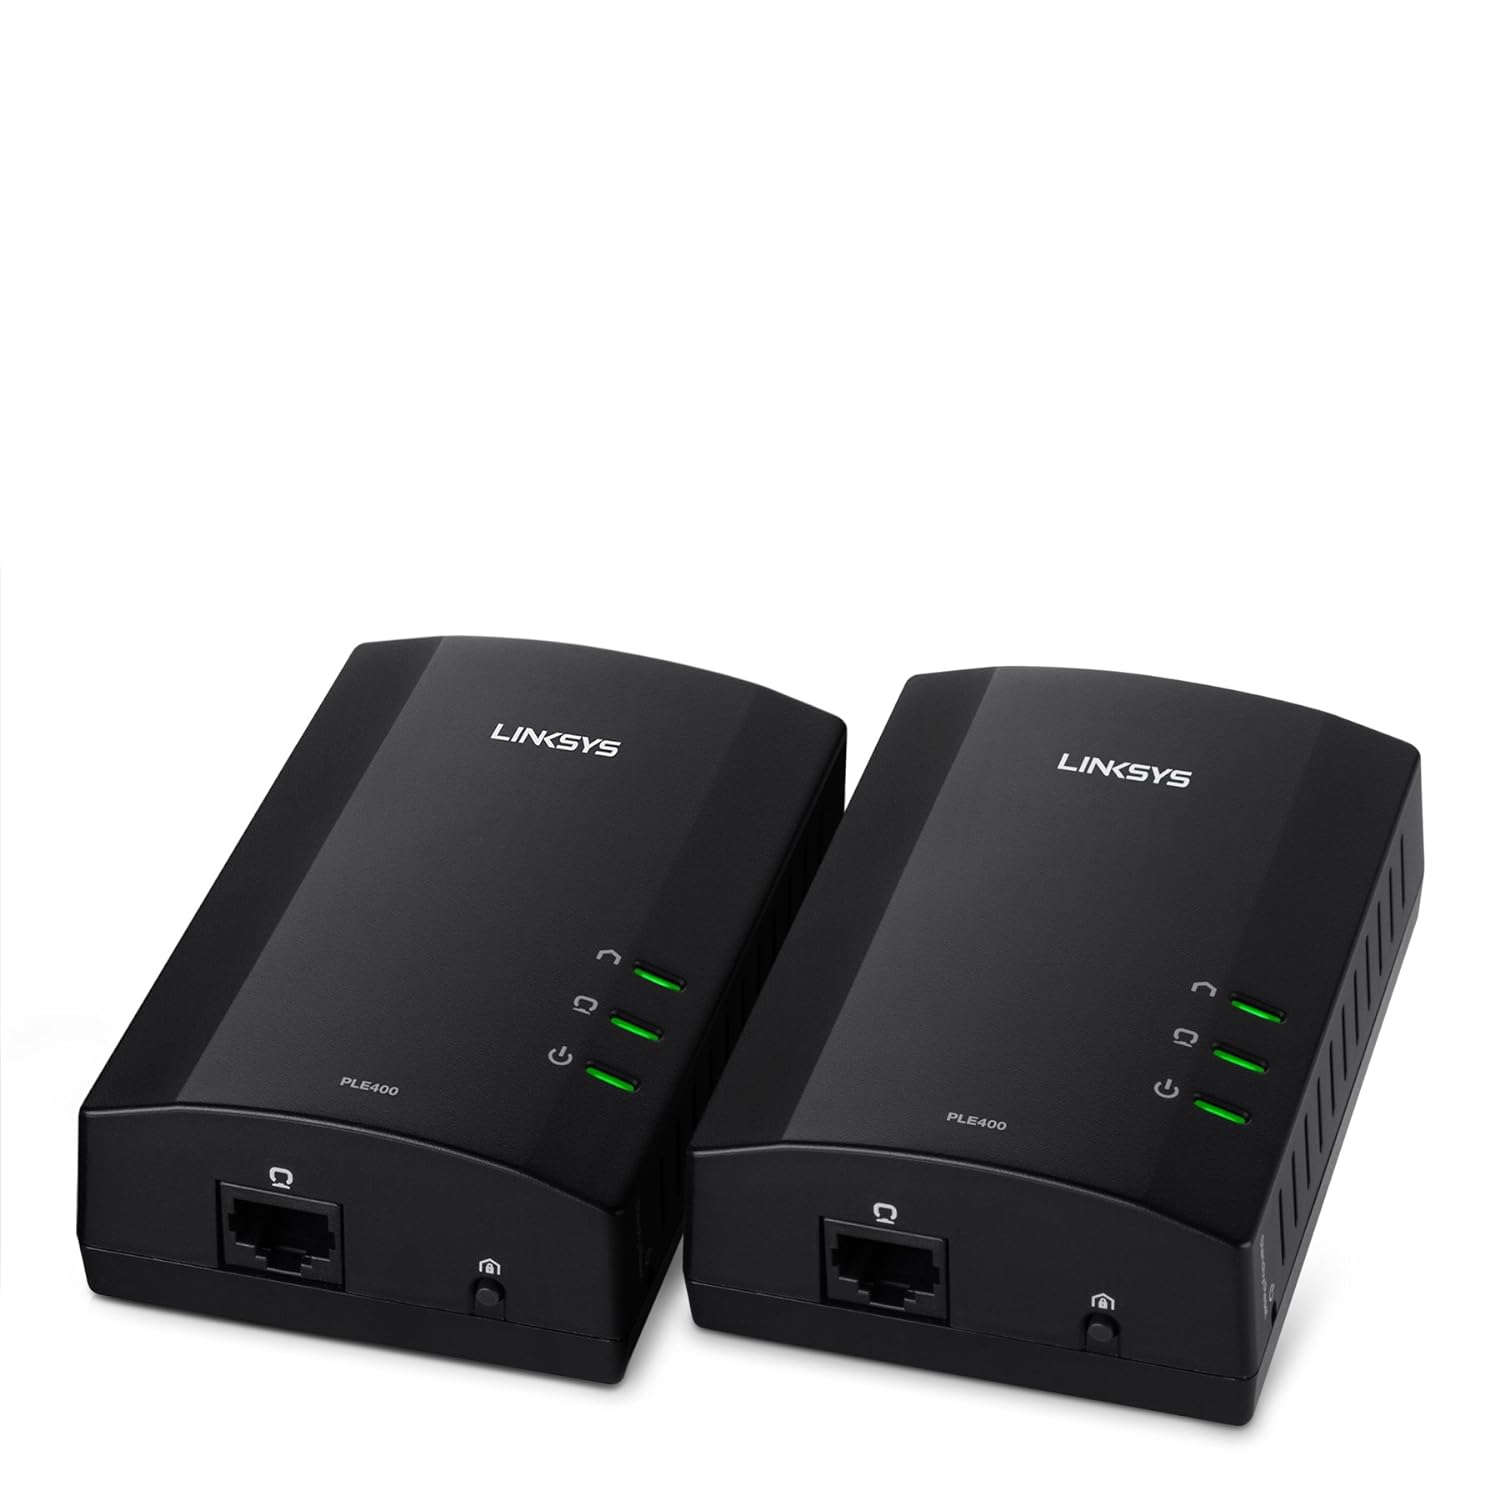 Linksys Powerline AV 1-Port Network Adapter Kit (PLEK400)